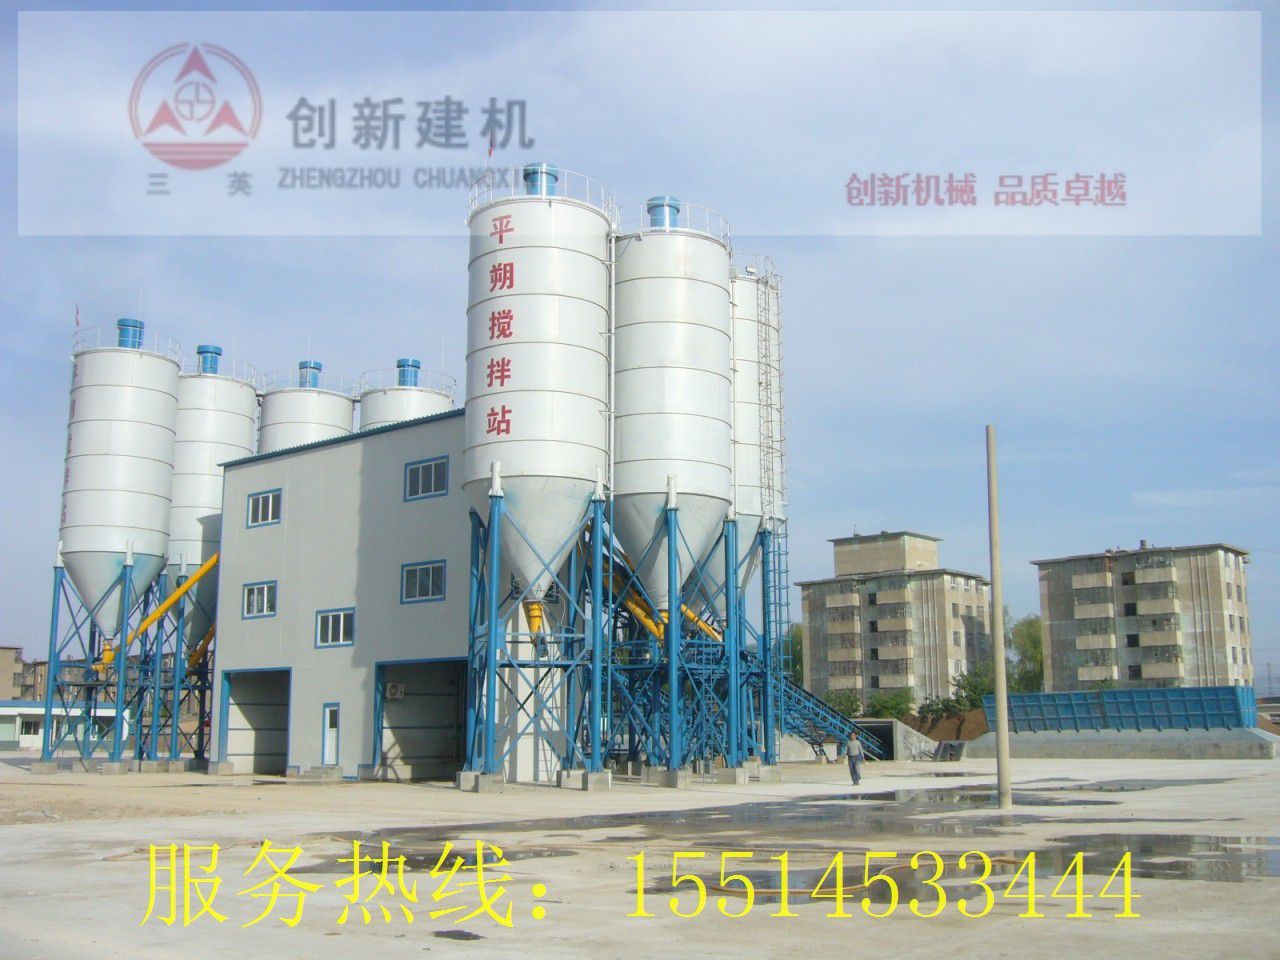 淄博高青县滚筒型搅拌机企业需加强自身管理建设